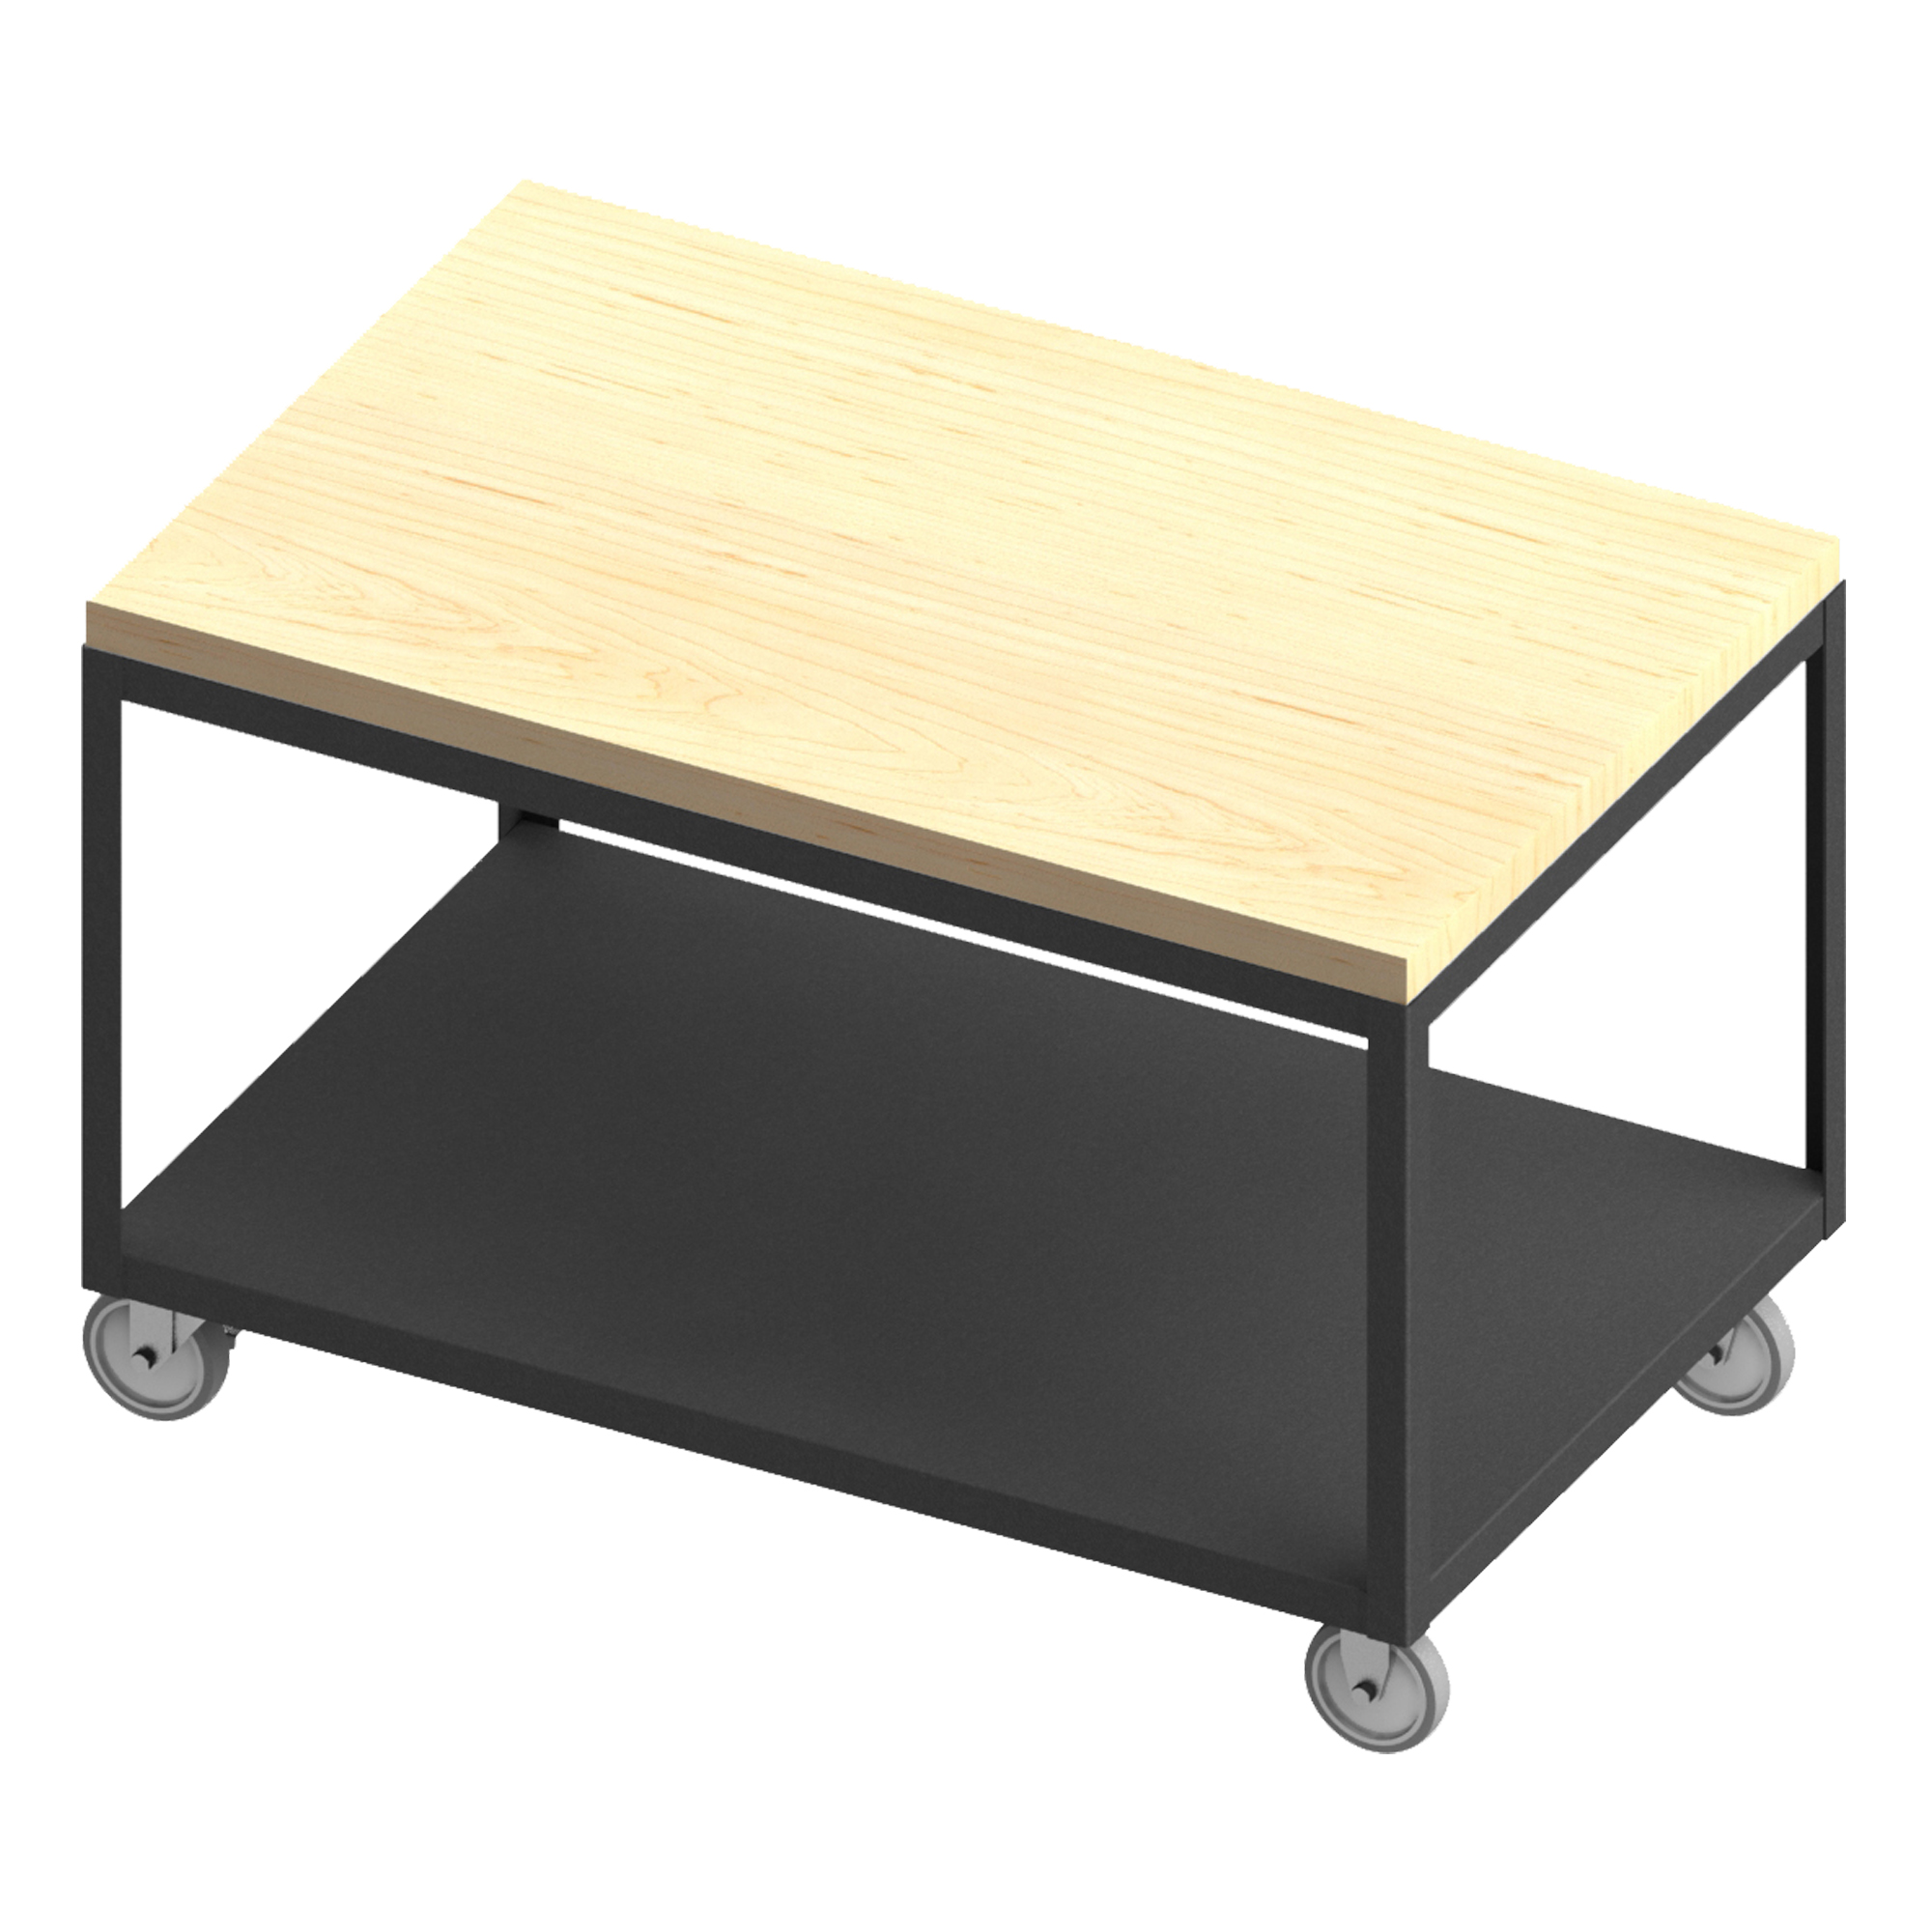 高甲板便攜式桌子，楓木桌面，尺寸 30-1/4 x 72-1/4 x 31-13/16 英寸